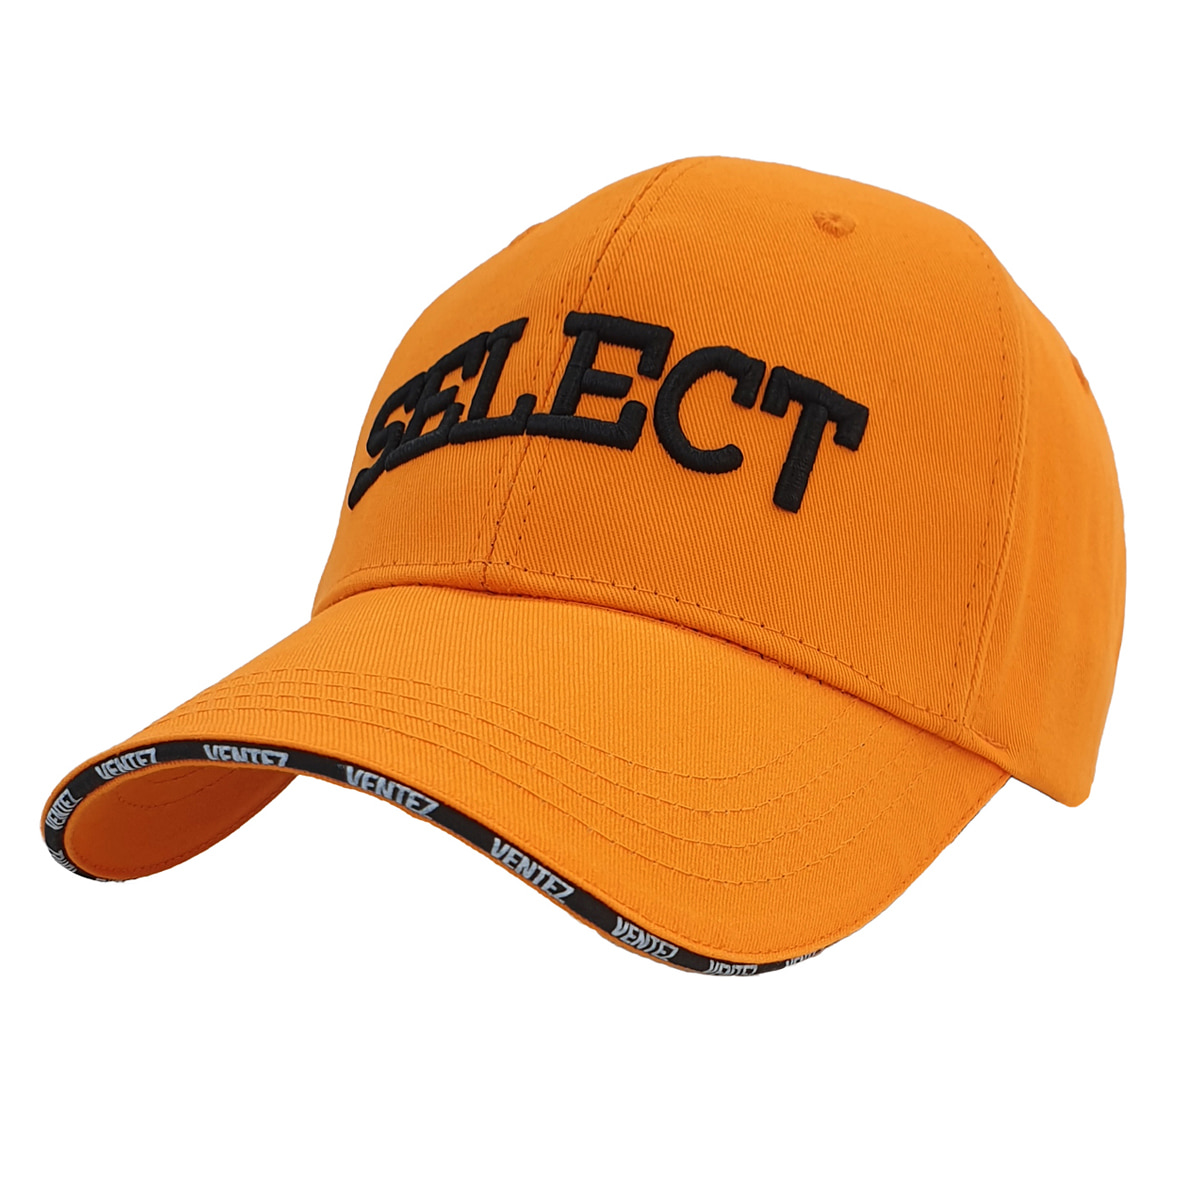 SELECT CAP VER.2 - 벤테즈